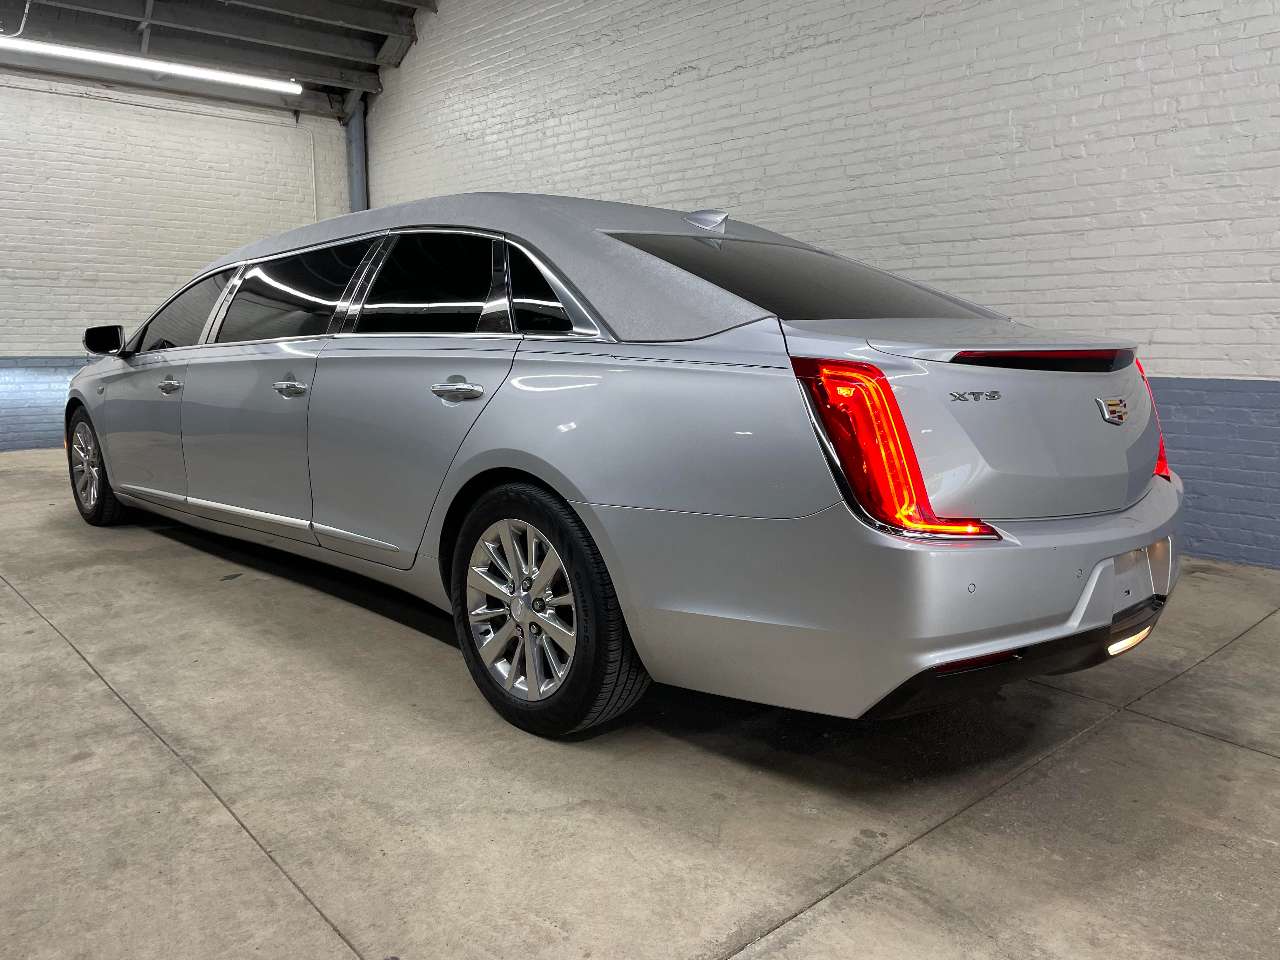 2019 Cadillac Platinum 6 Door Limousine 1690463662115